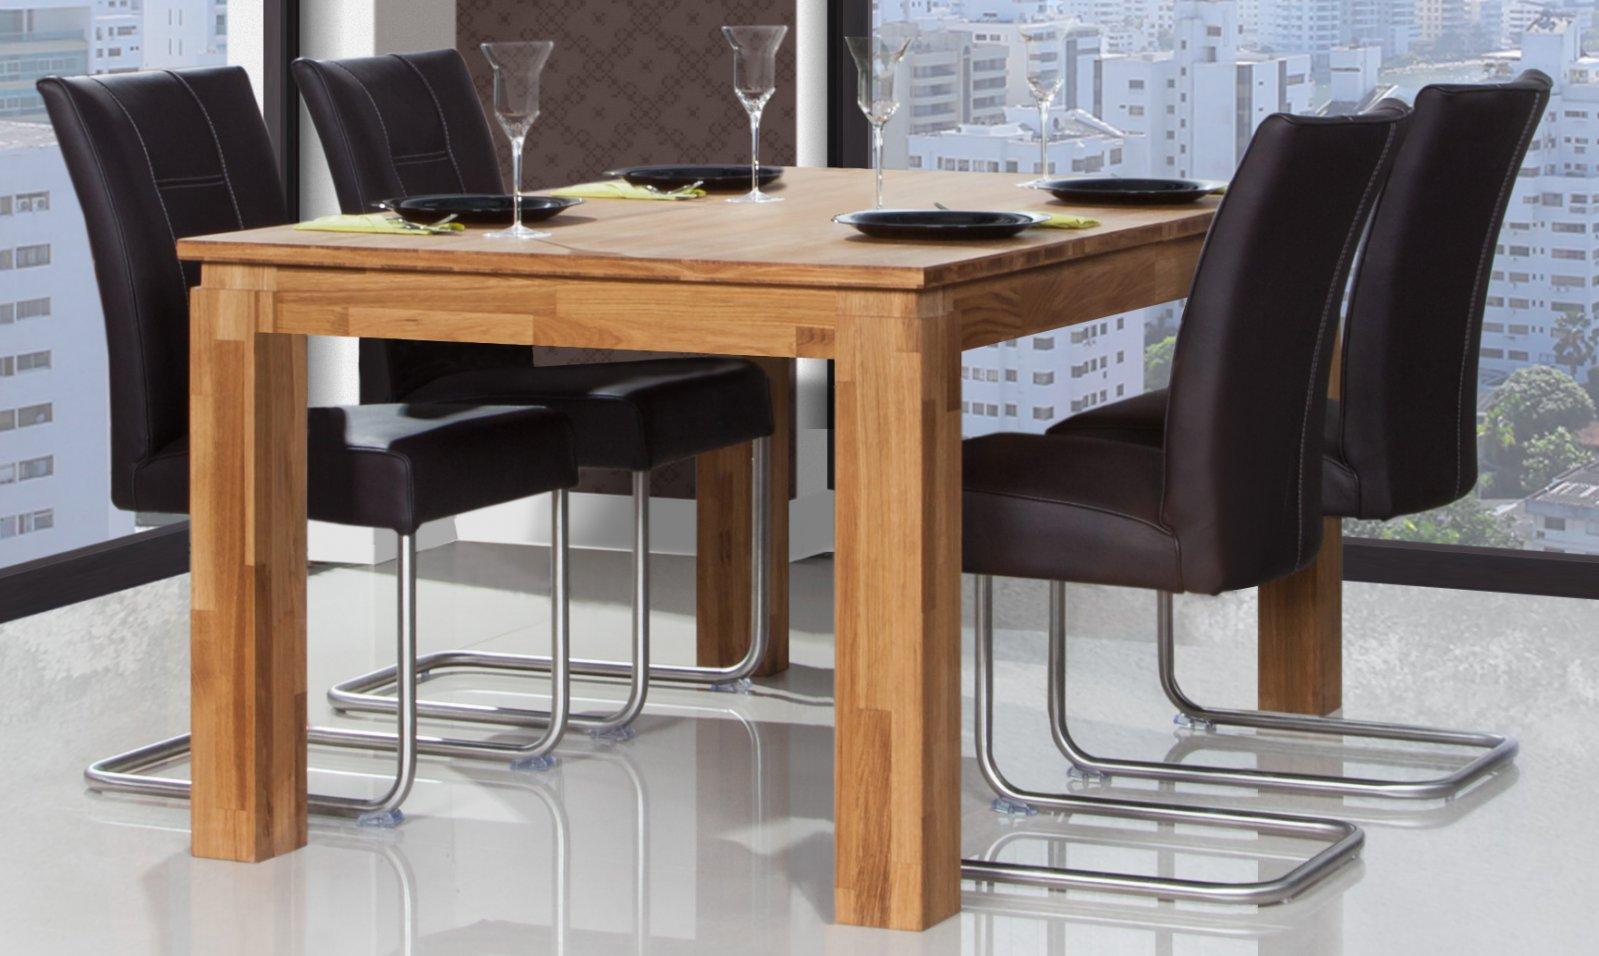 Tisch mit ausziehbarer Tischplatte VINCI